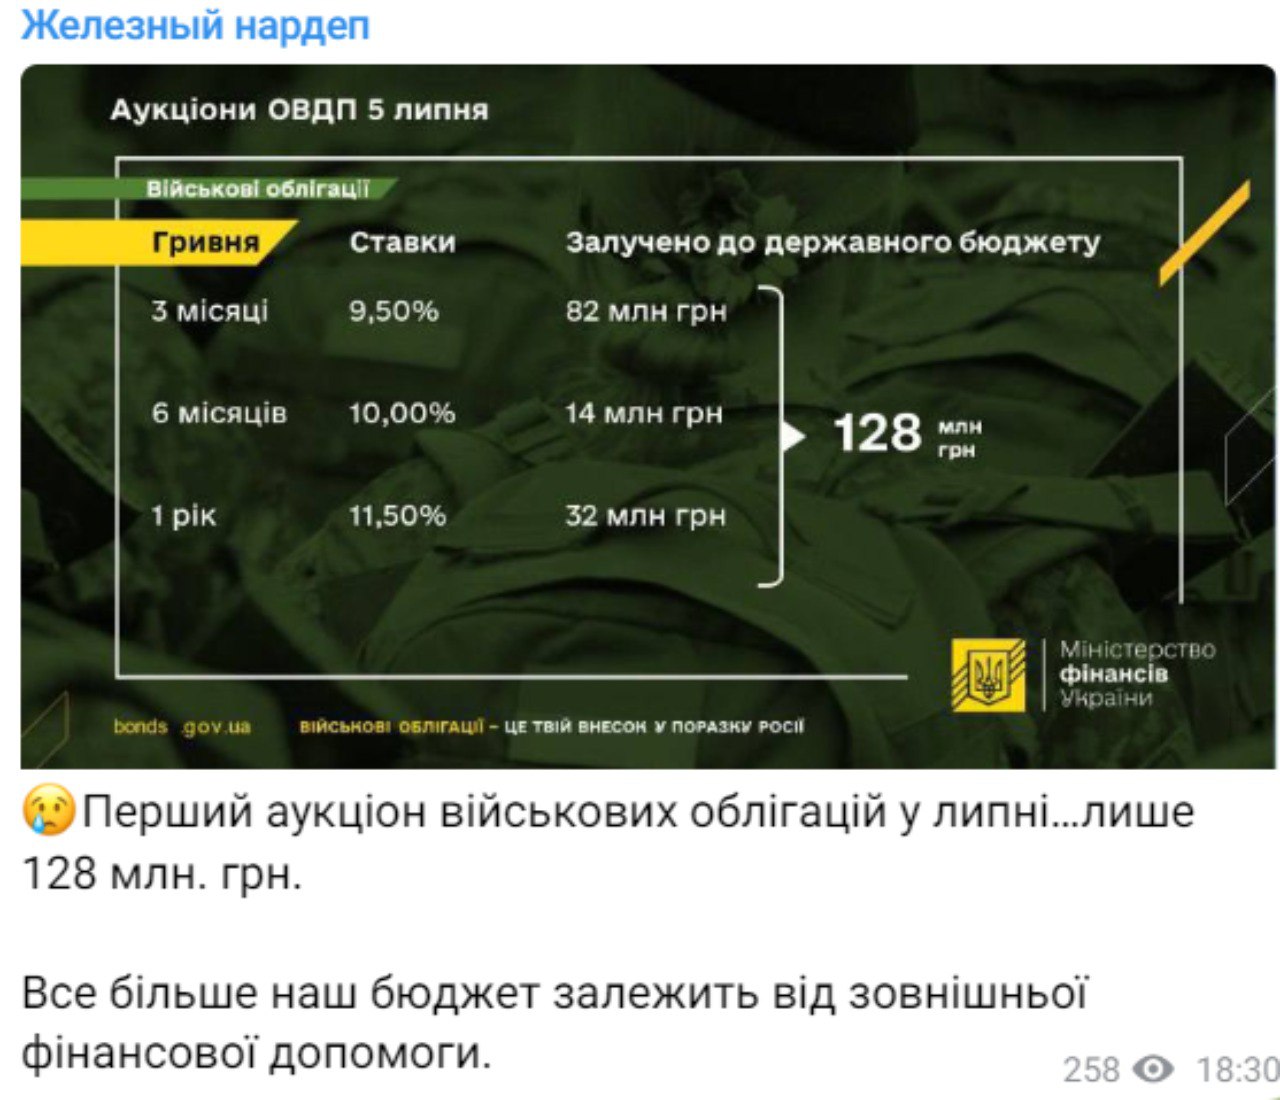 Первый аукцион военных облигаций в июле принес только 128 млн грн